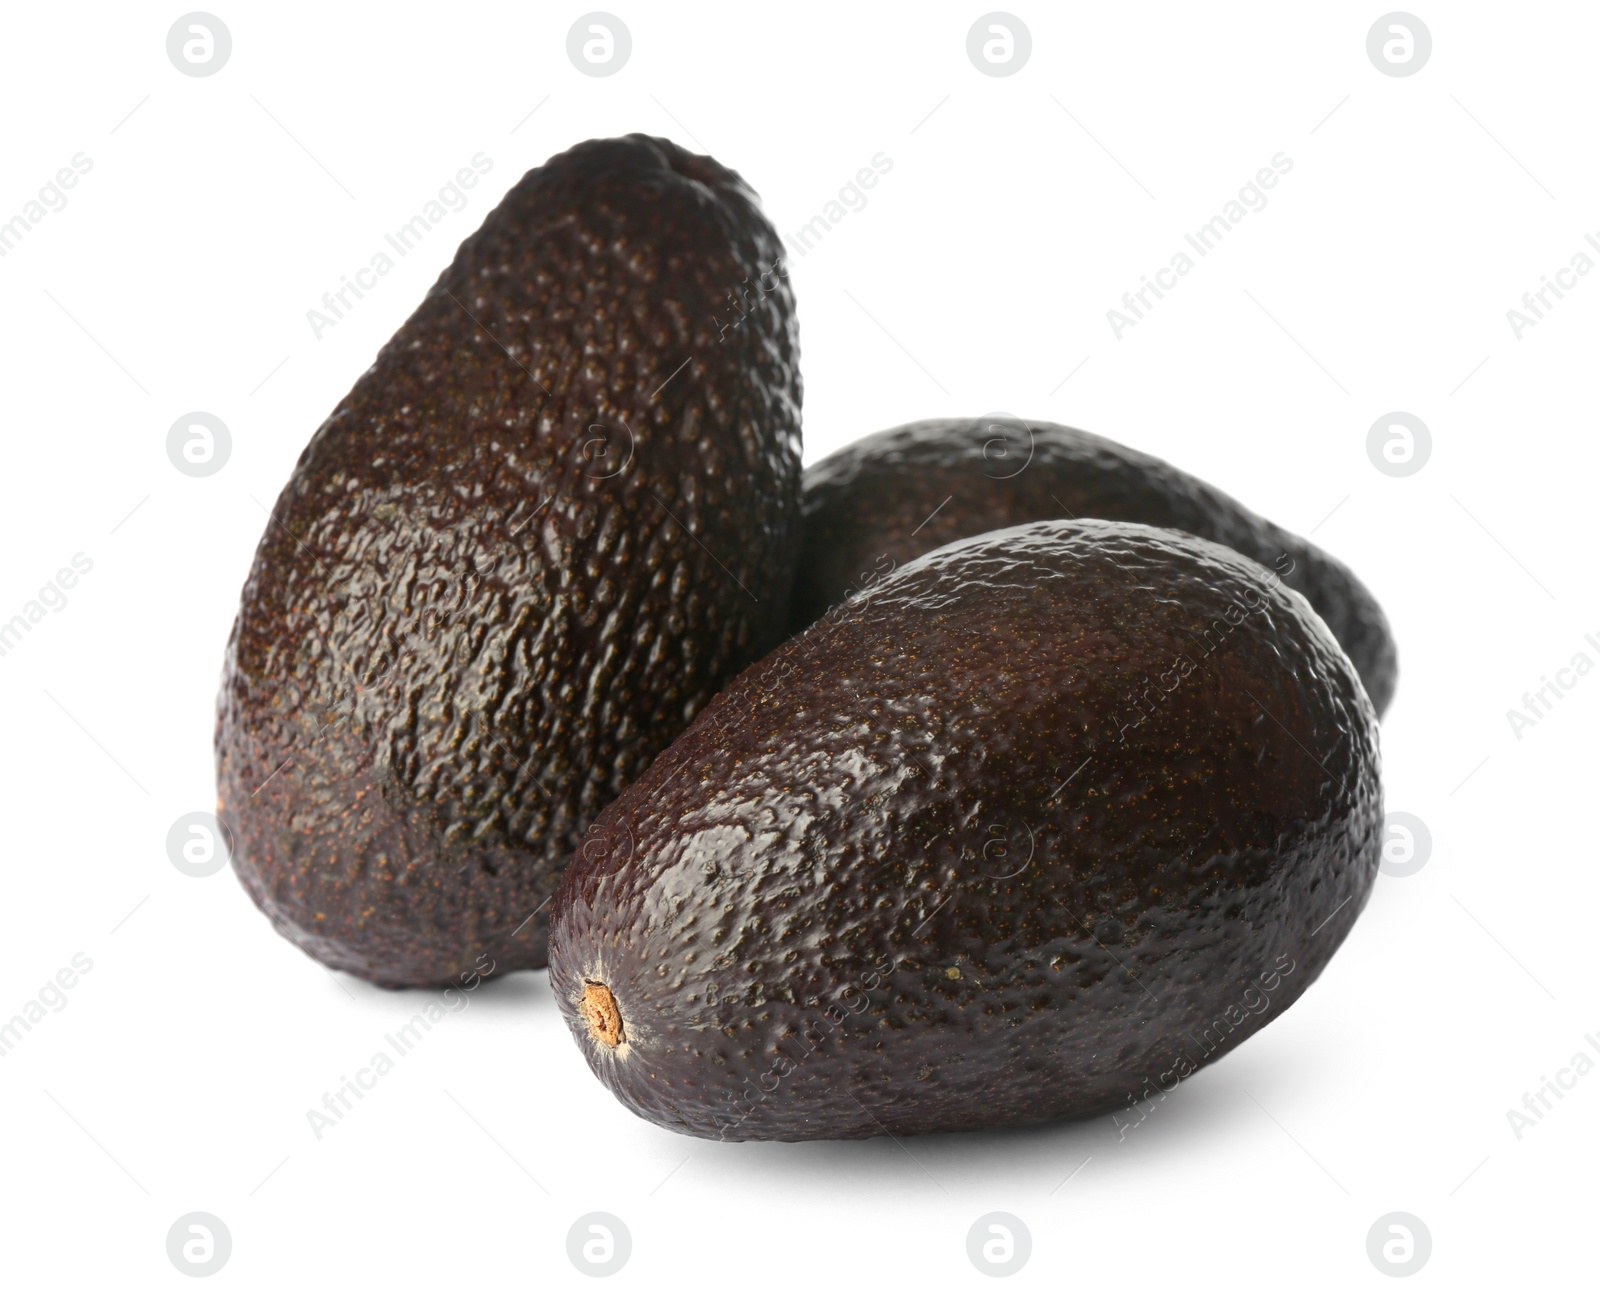 Photo of Whole fresh ripe avocadoes on white background